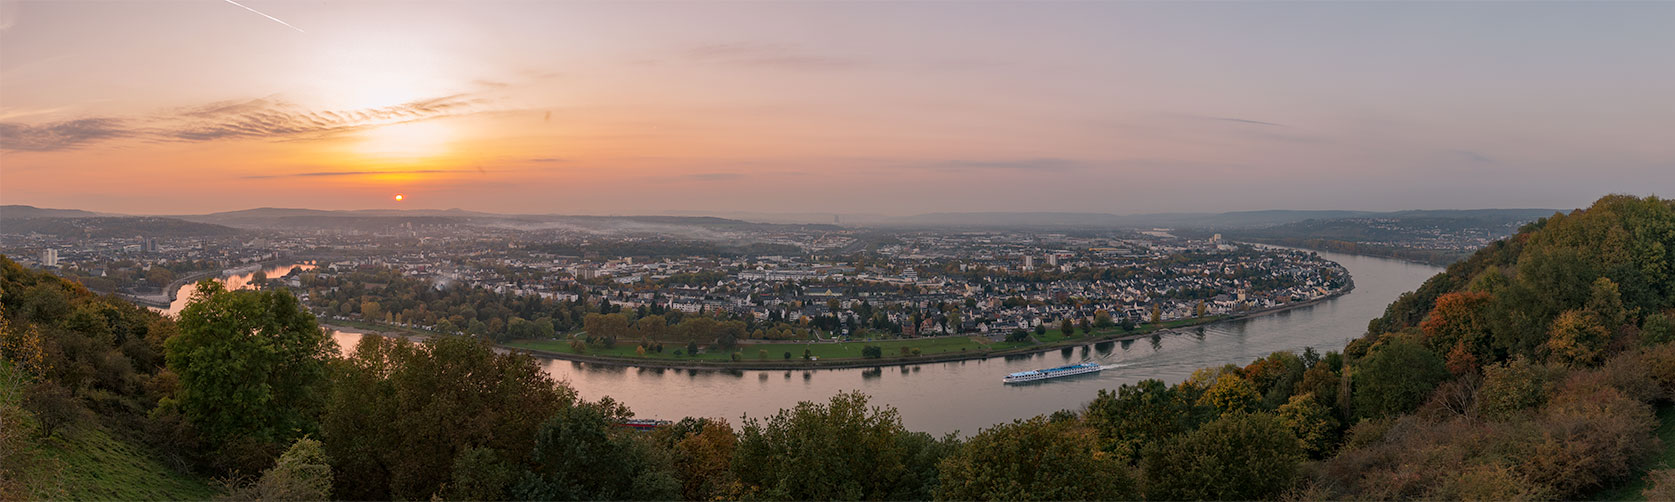 Koblenz Duitsland